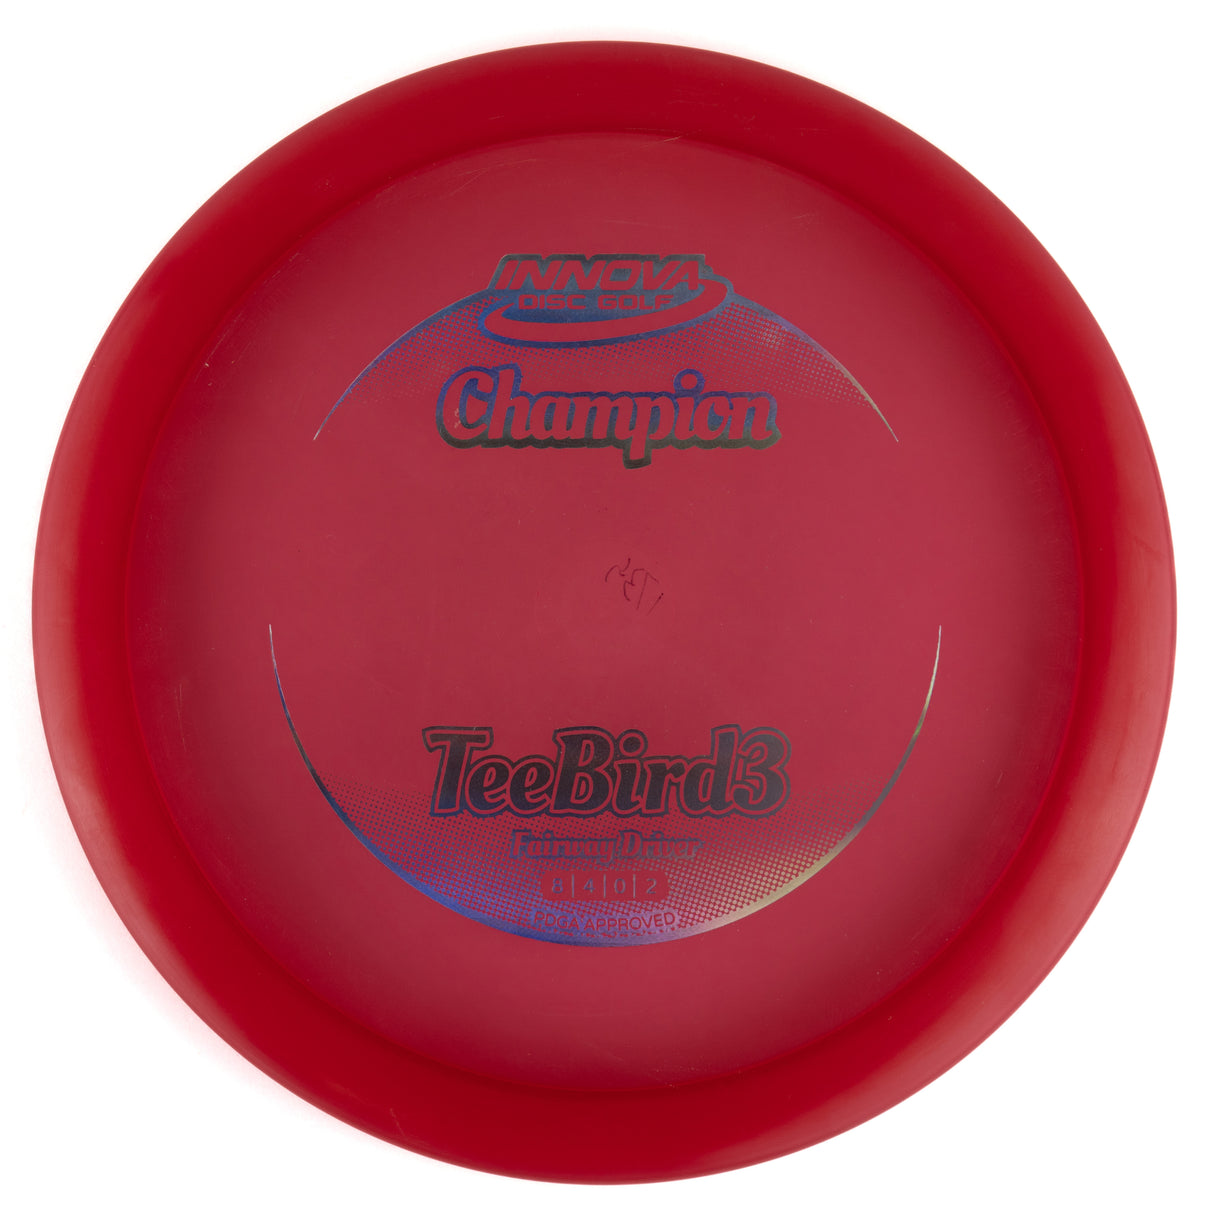 Innova Teebird3 - Champion 174g | Style 0002